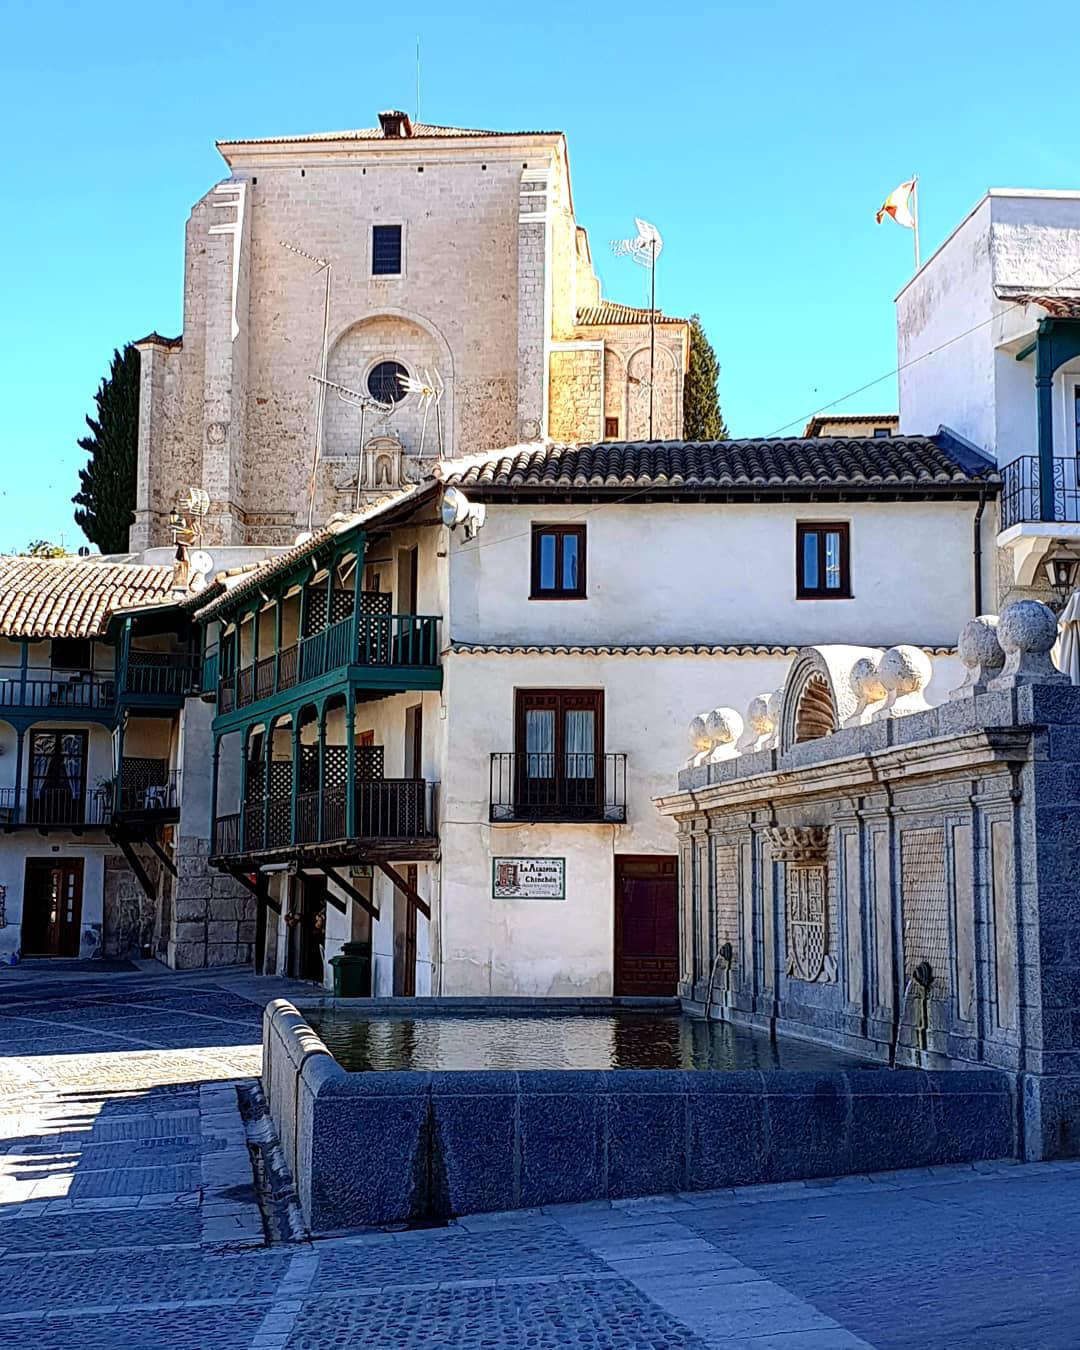 清静悠闲的历史悠久的中世纪小镇    钦琼小镇离马德里非常近，这是一个历史悠久的中世纪小城镇，据说这